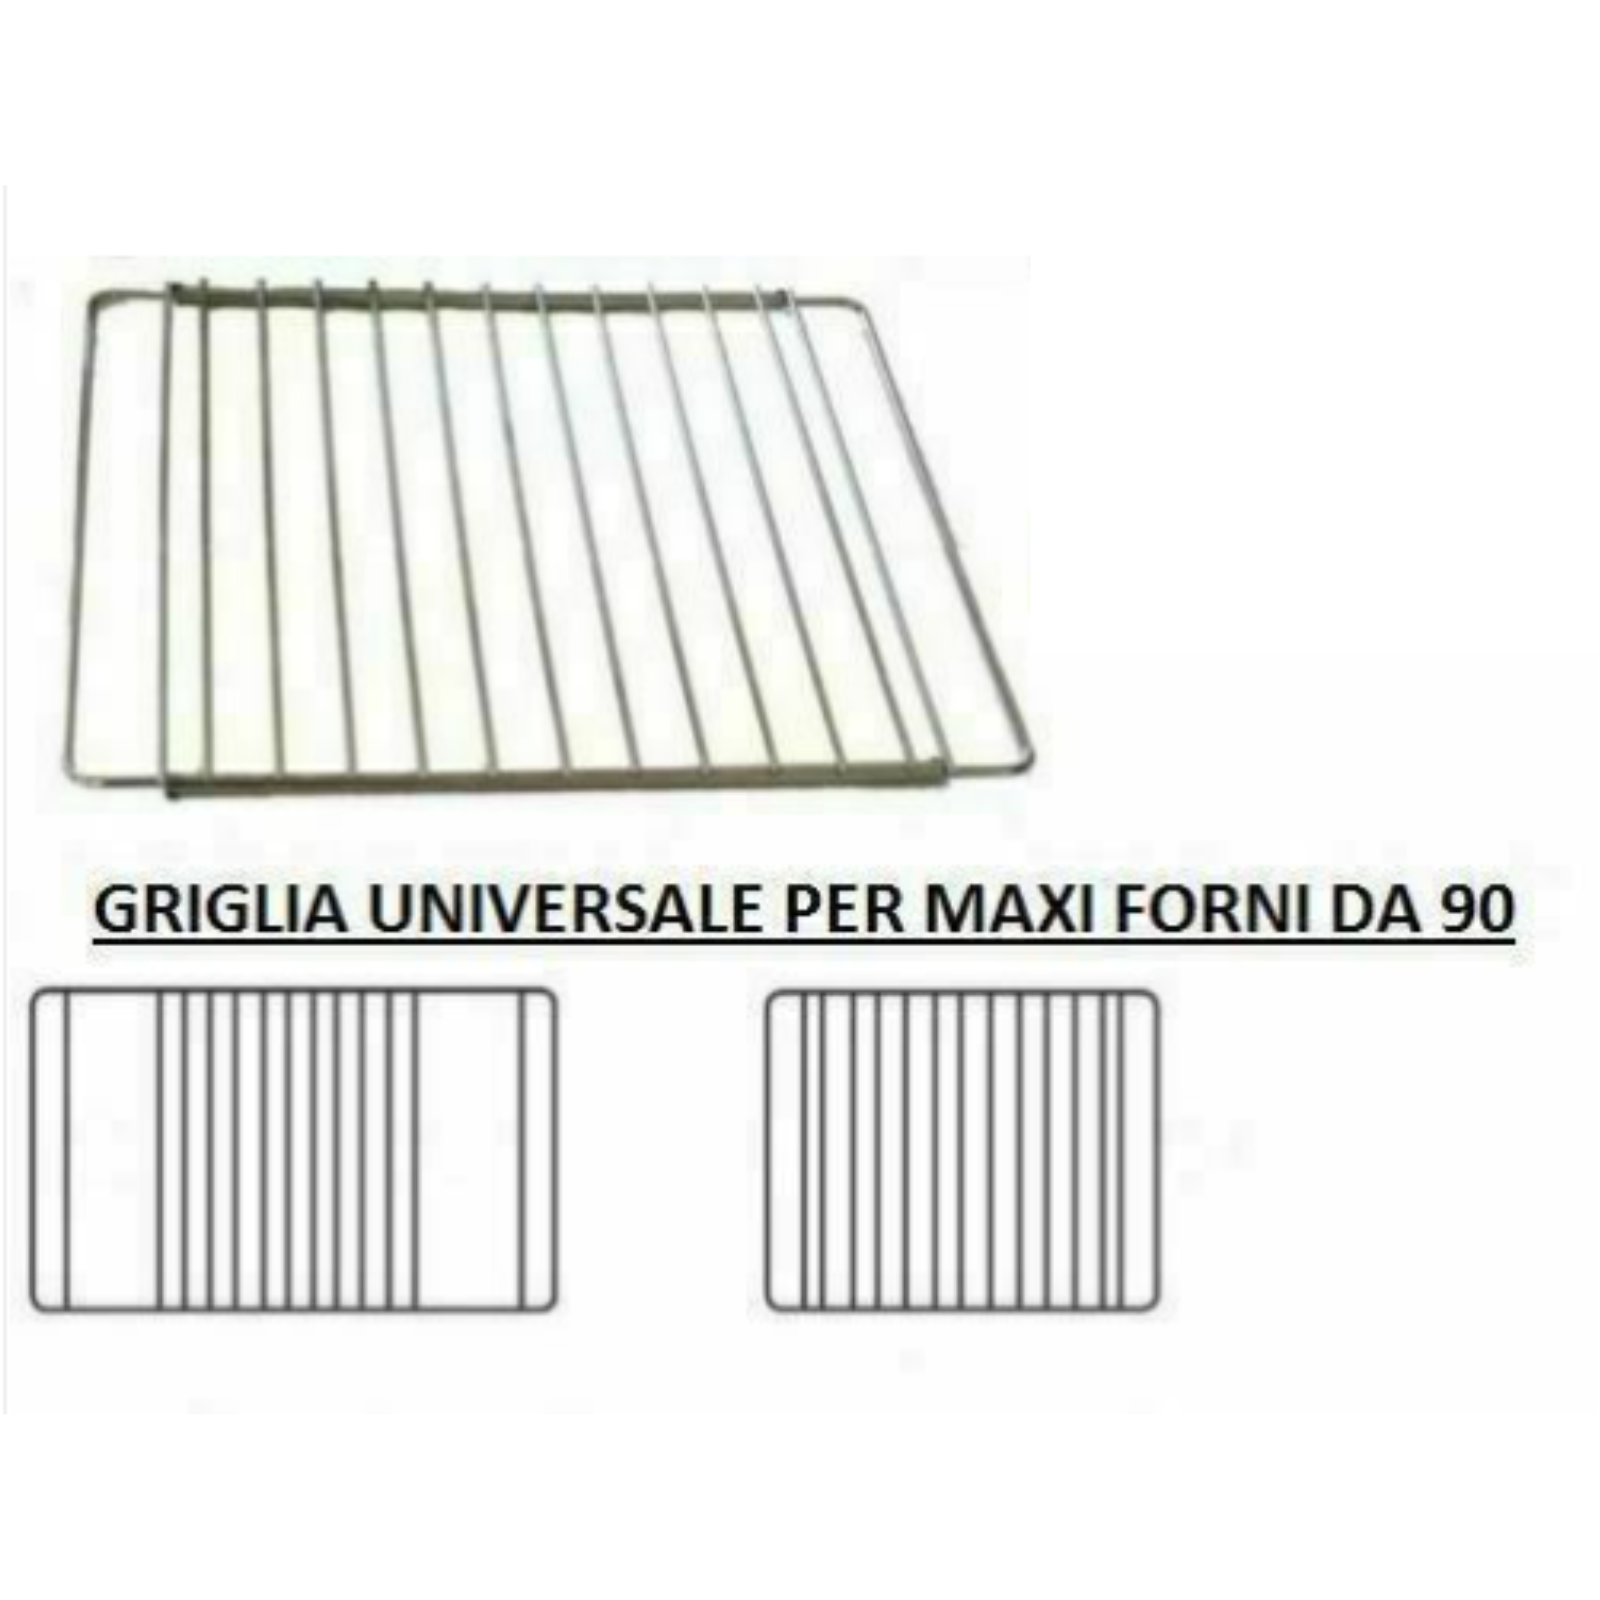 GRIGLIA RIPIANO PER MAXI FORNO DA 90 cm REGOLABILE -UNIVERSALE - ACCIAIO  CROMATO